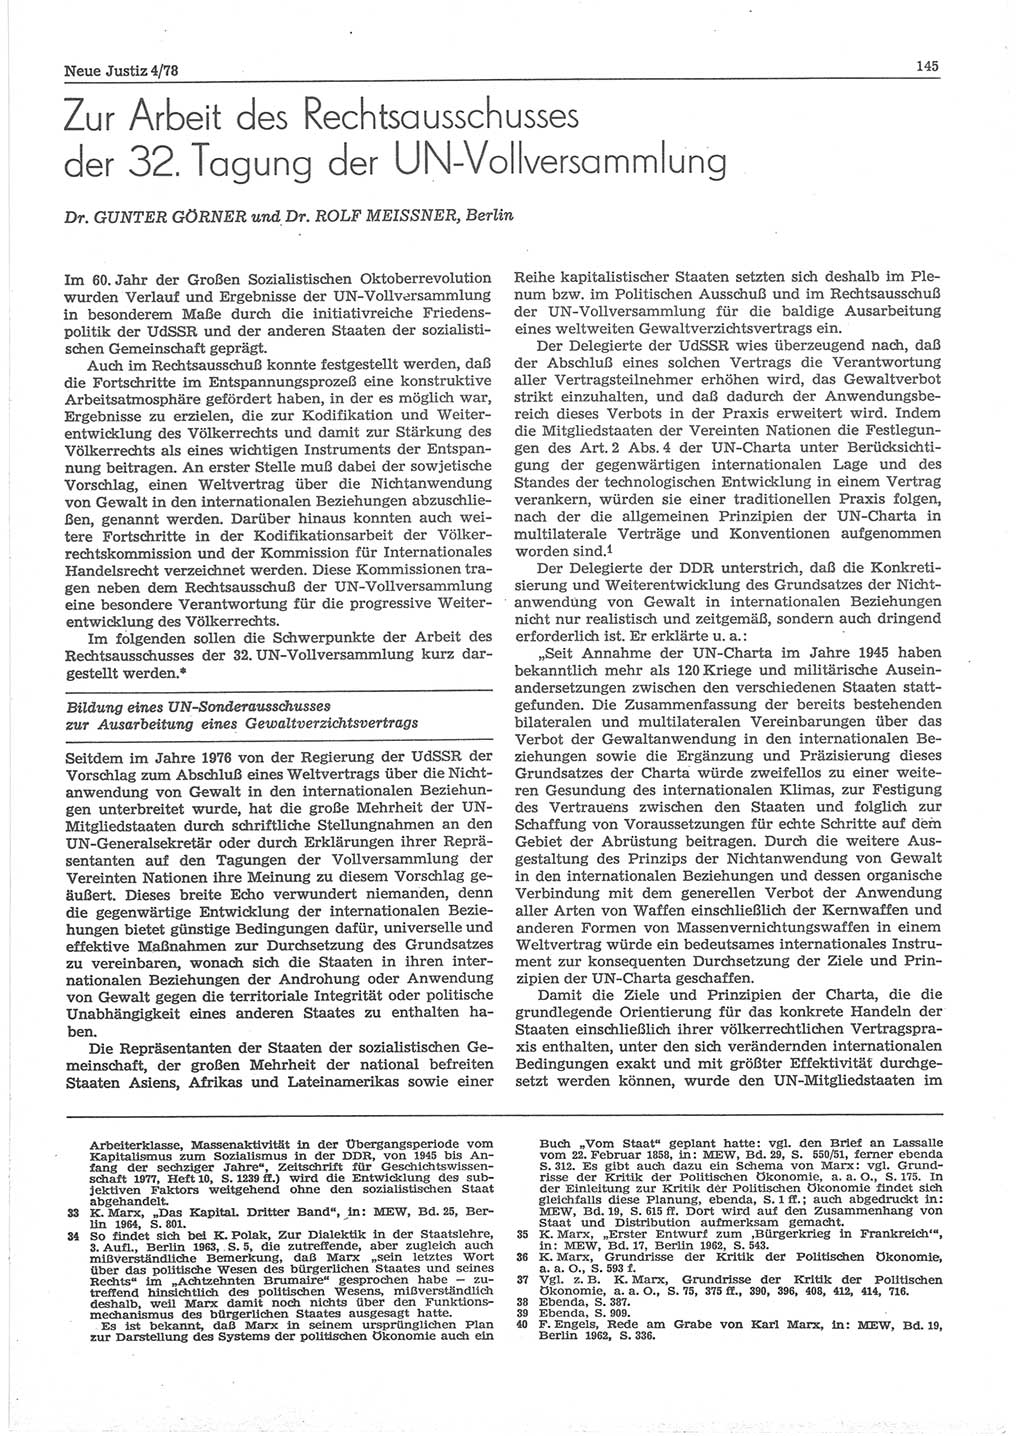 Neue Justiz (NJ), Zeitschrift für sozialistisches Recht und Gesetzlichkeit [Deutsche Demokratische Republik (DDR)], 32. Jahrgang 1978, Seite 145 (NJ DDR 1978, S. 145)